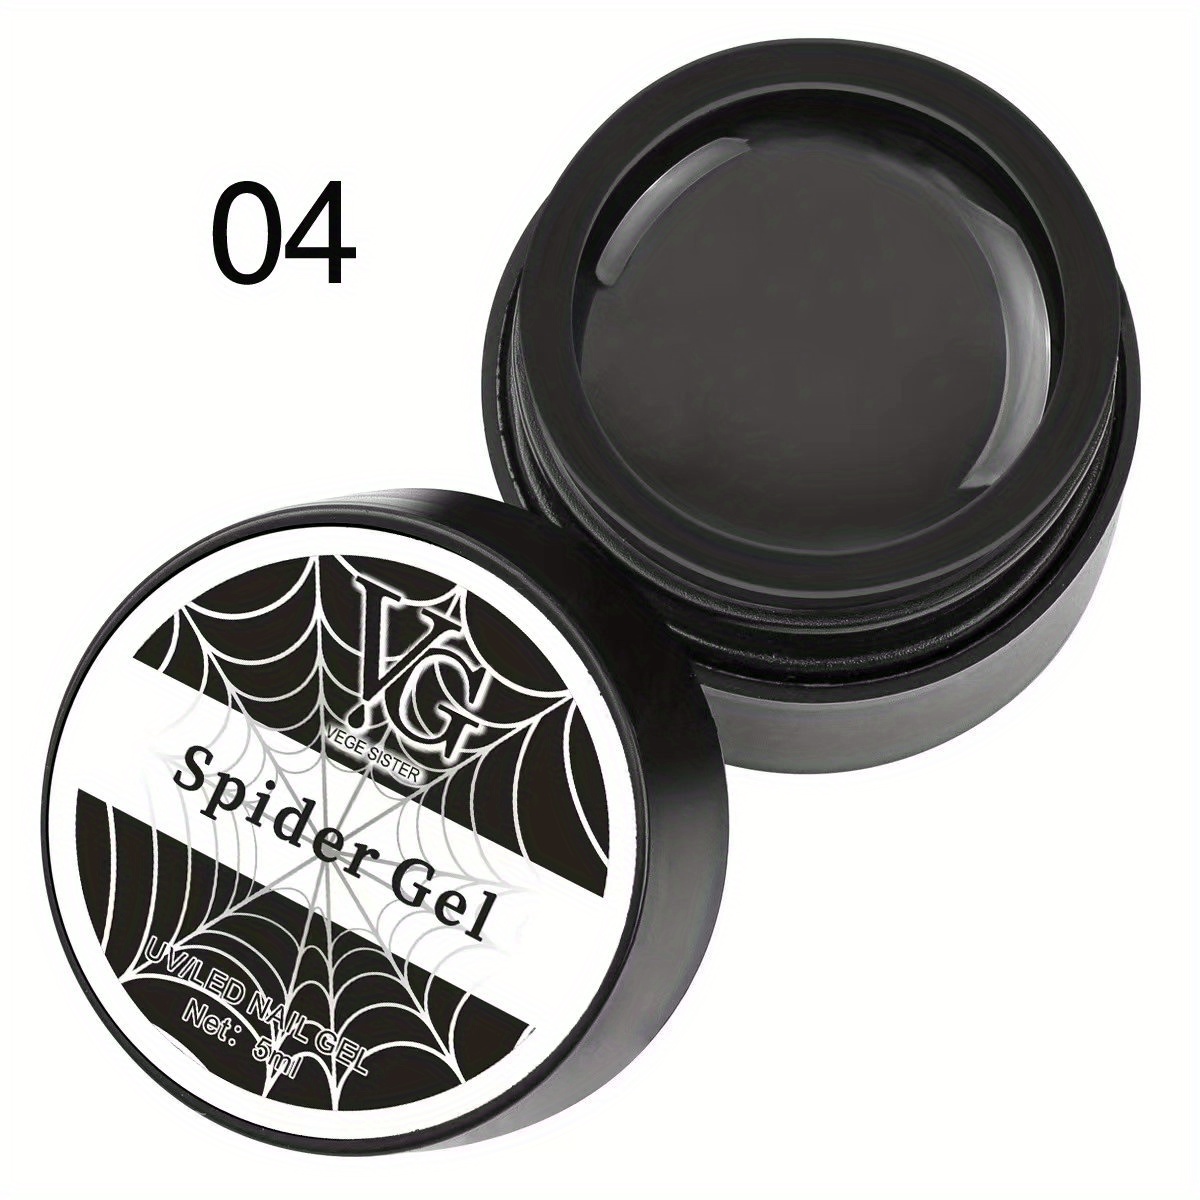 spider wax gel